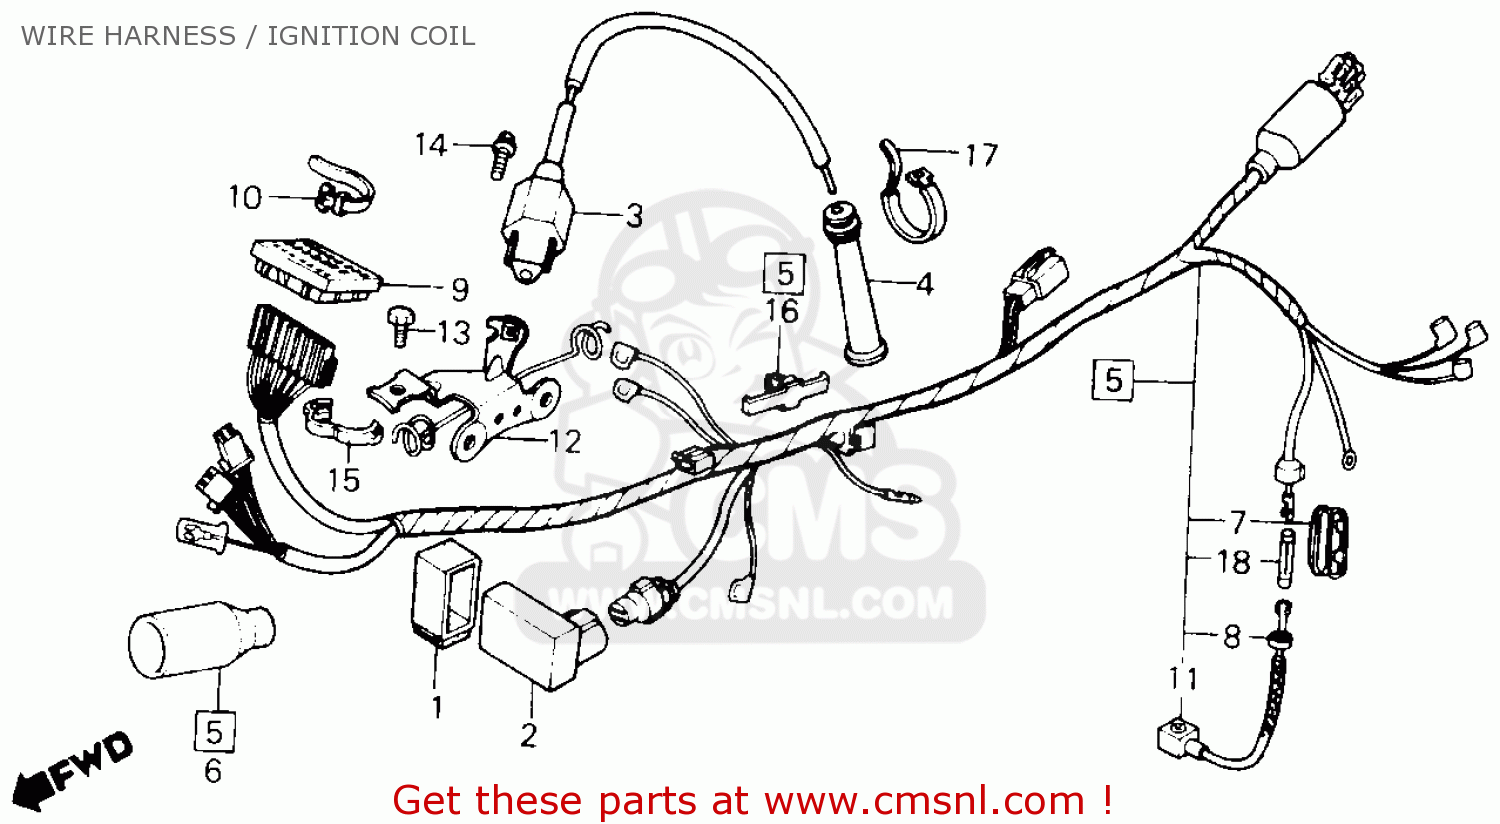 1987 Honda xl600r wiring diagram #3